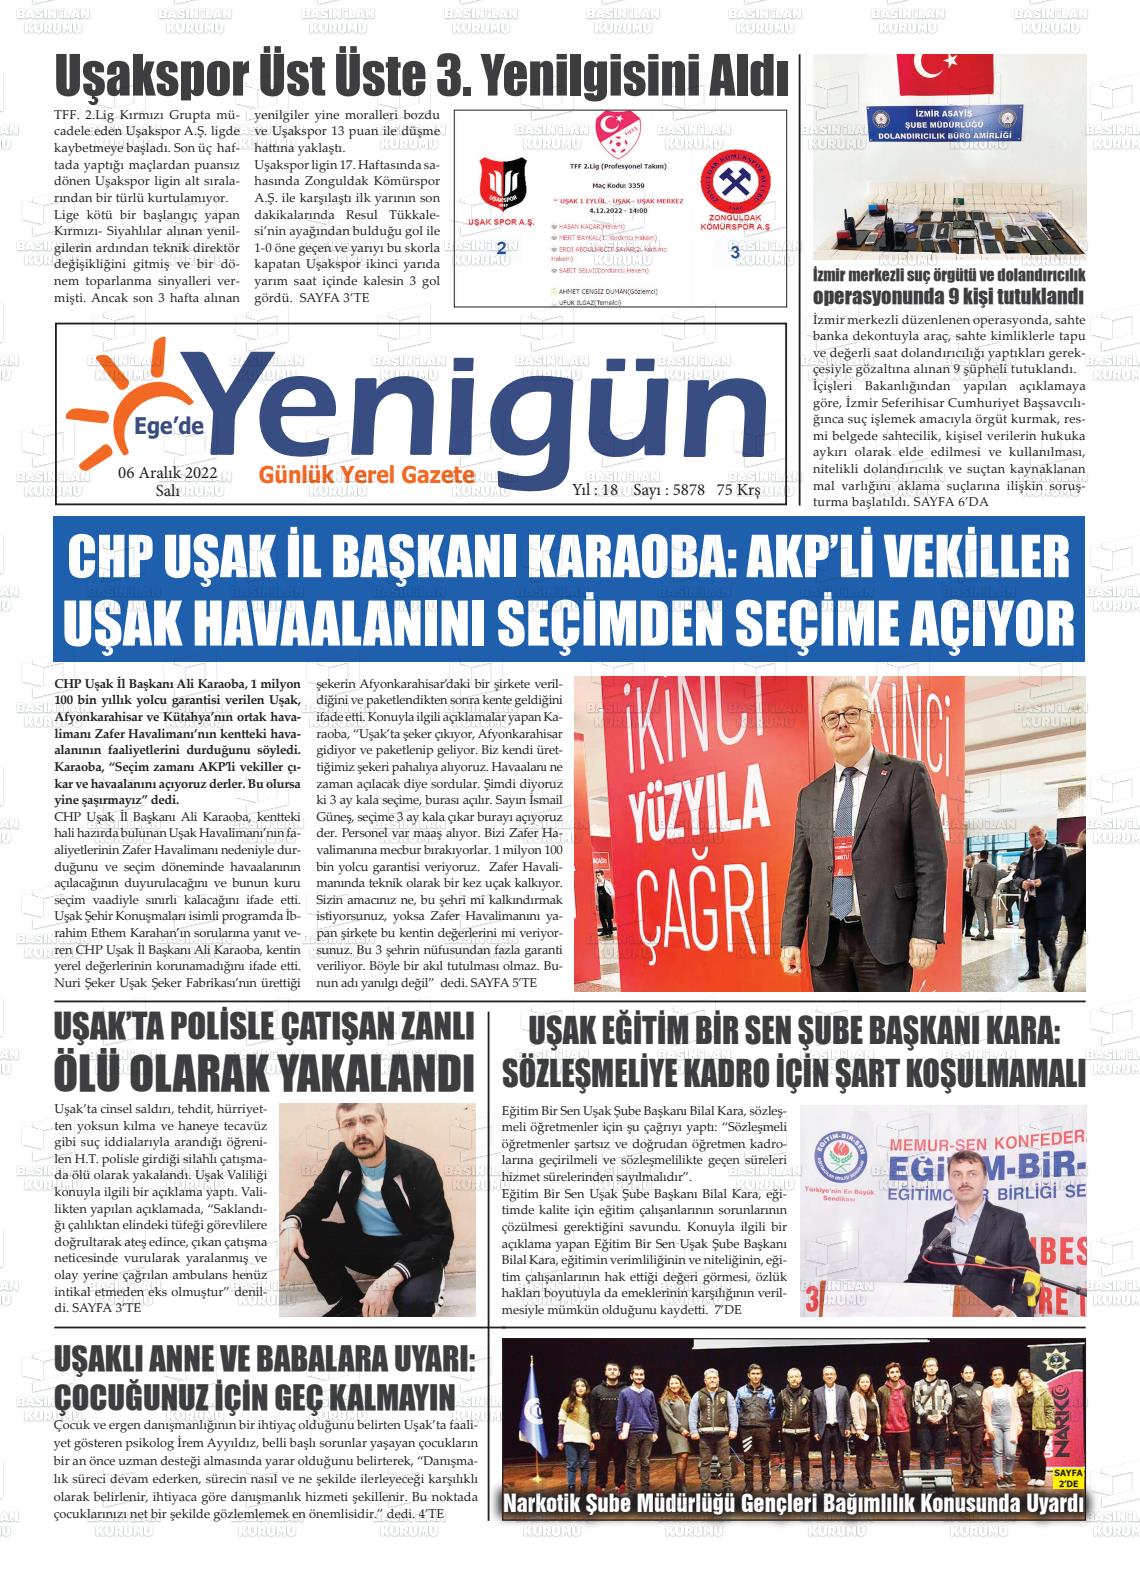 06 Aralık 2022 EGE'DE YENİGÜN GAZETESİ Gazete Manşeti